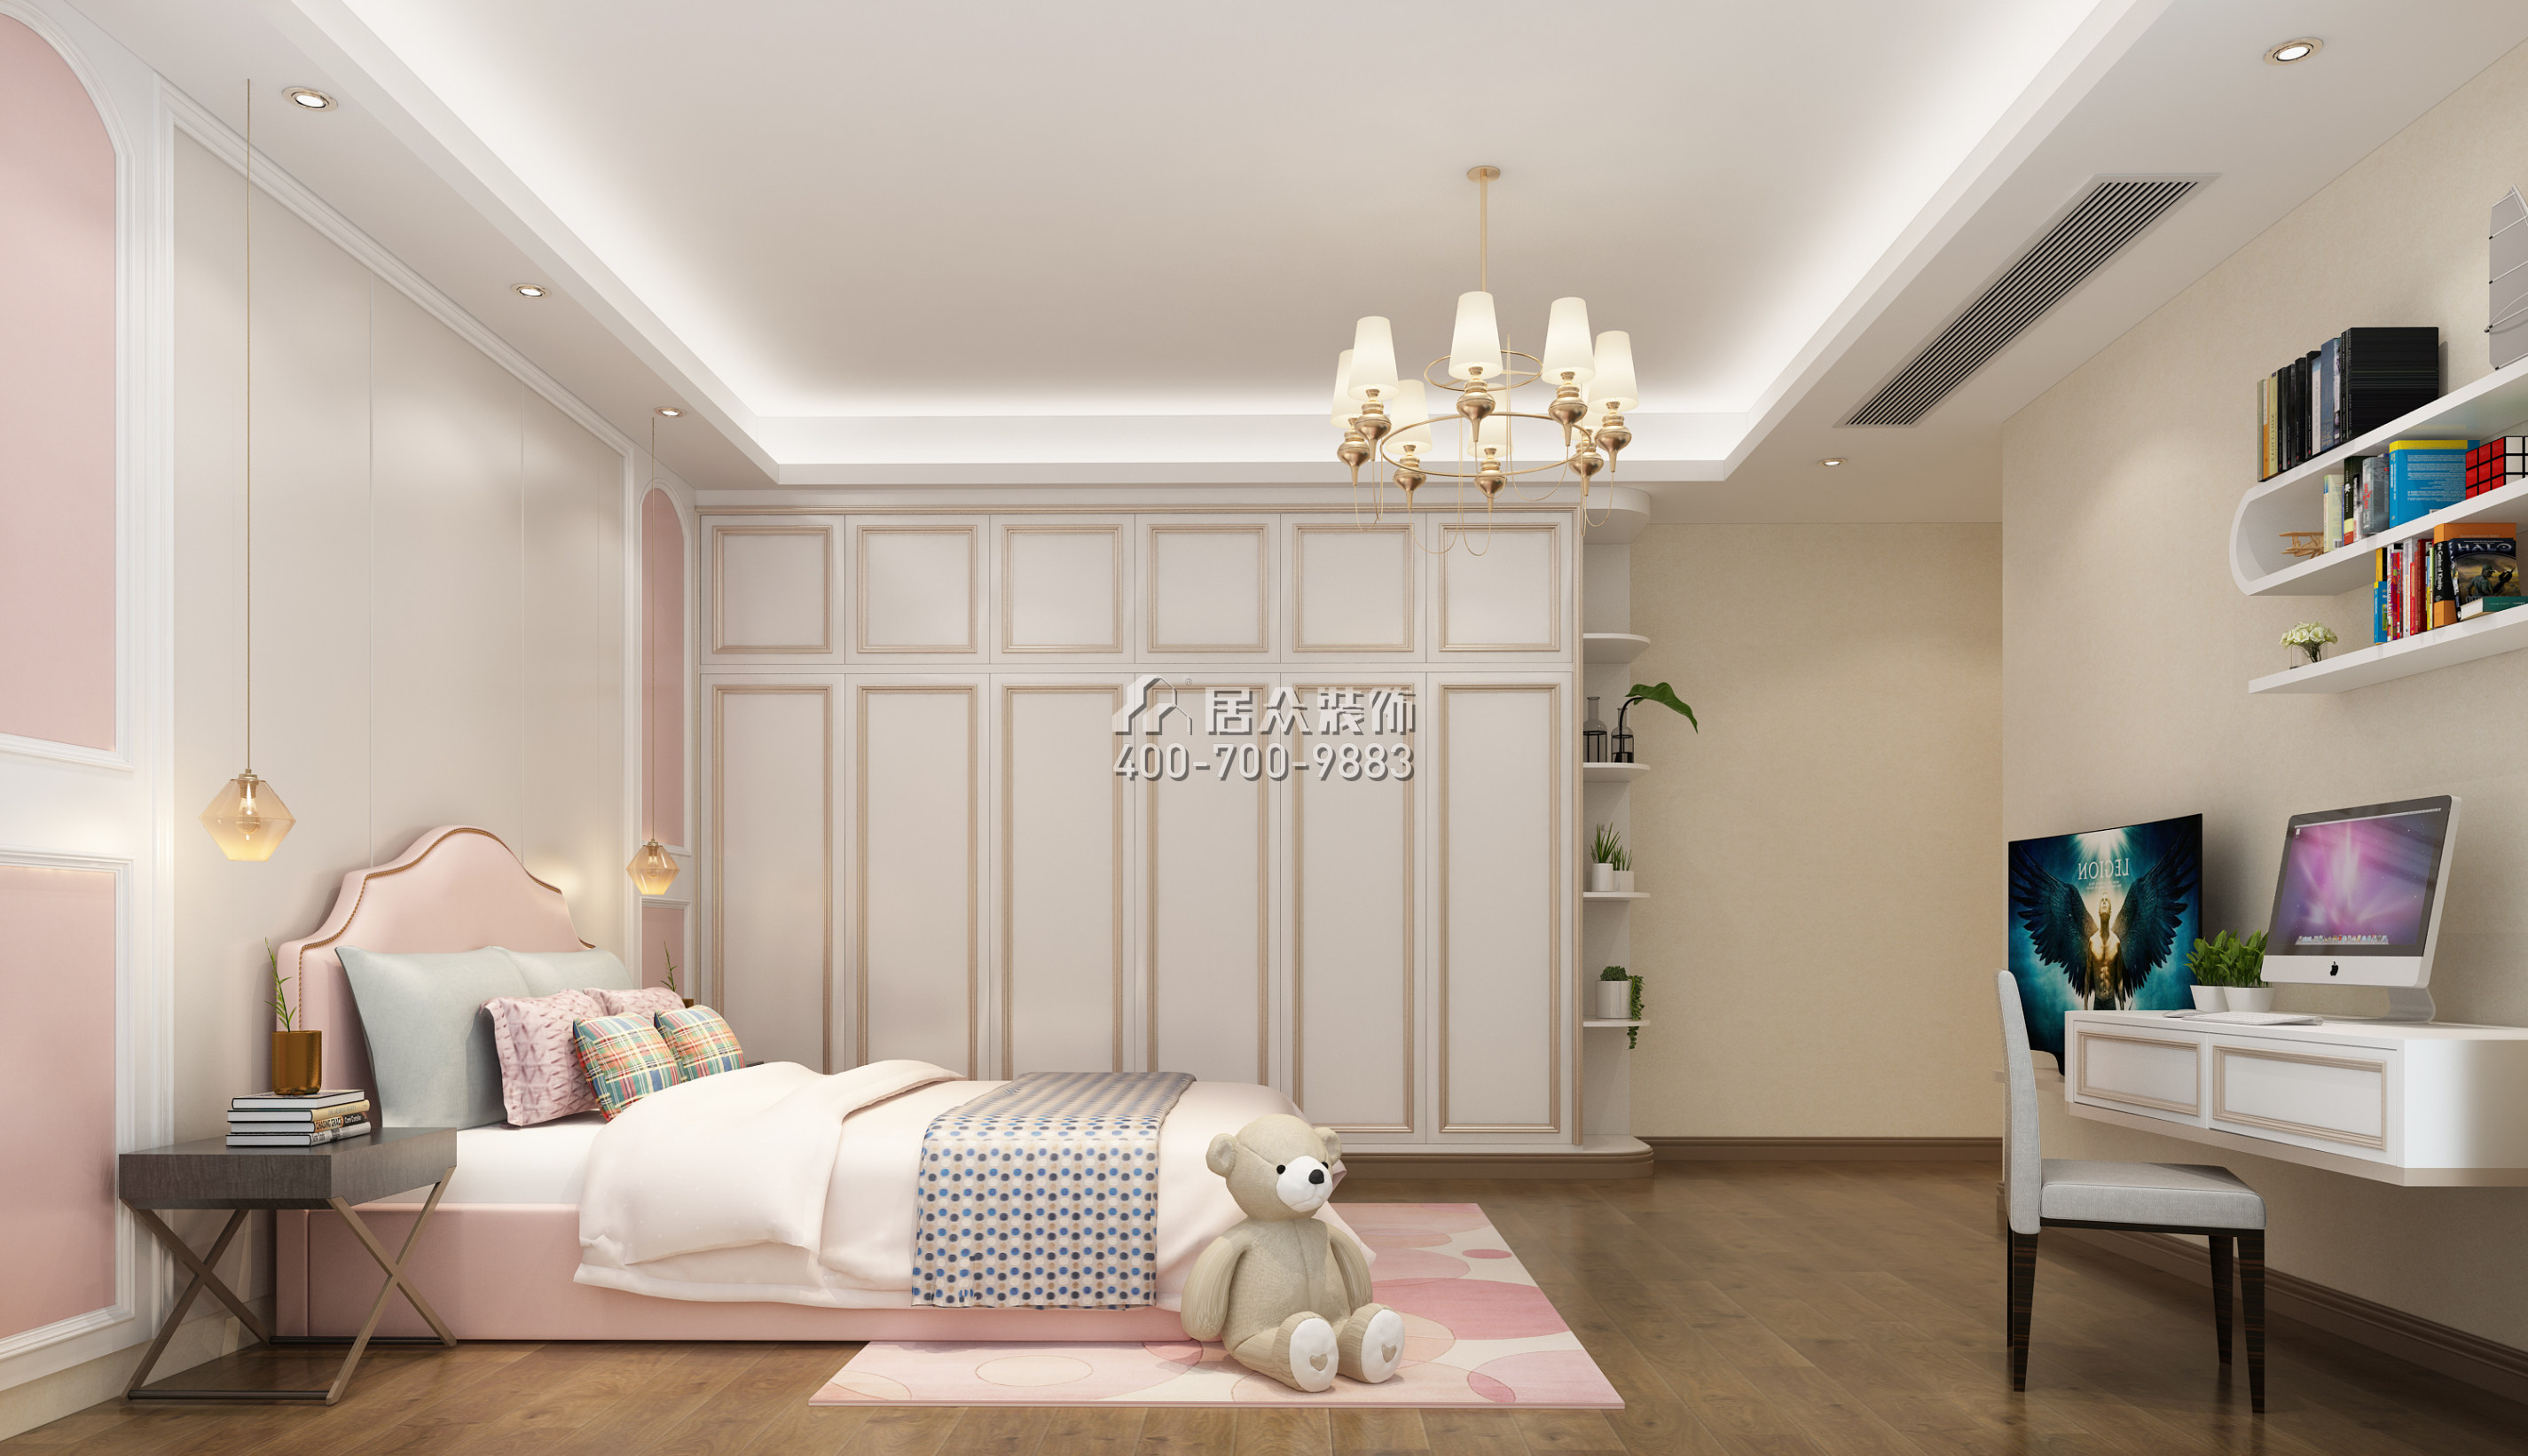 信荣海逸半岛500平方米中式风格别墅户型卧室装修效果图